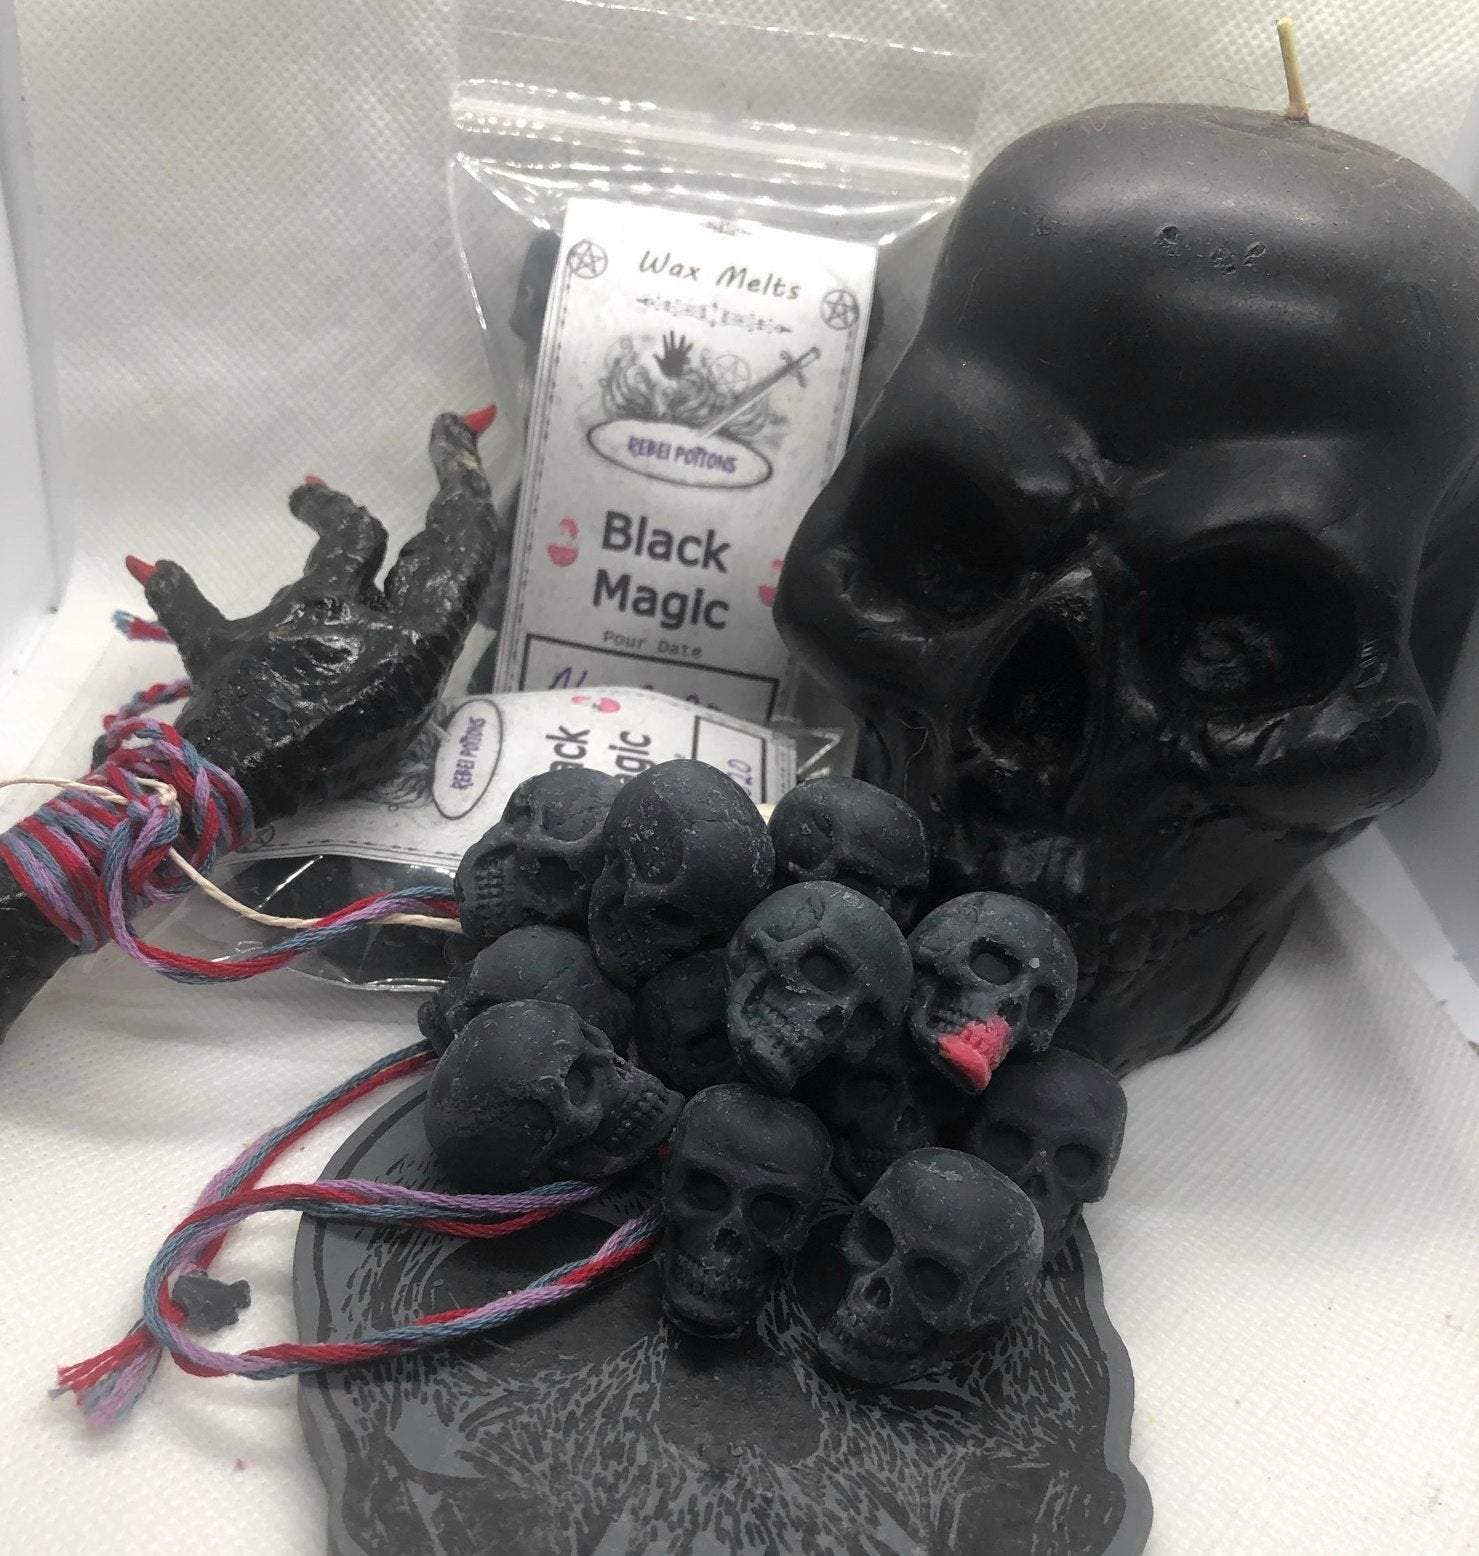 Black Magic Mini Skull Wax Melts